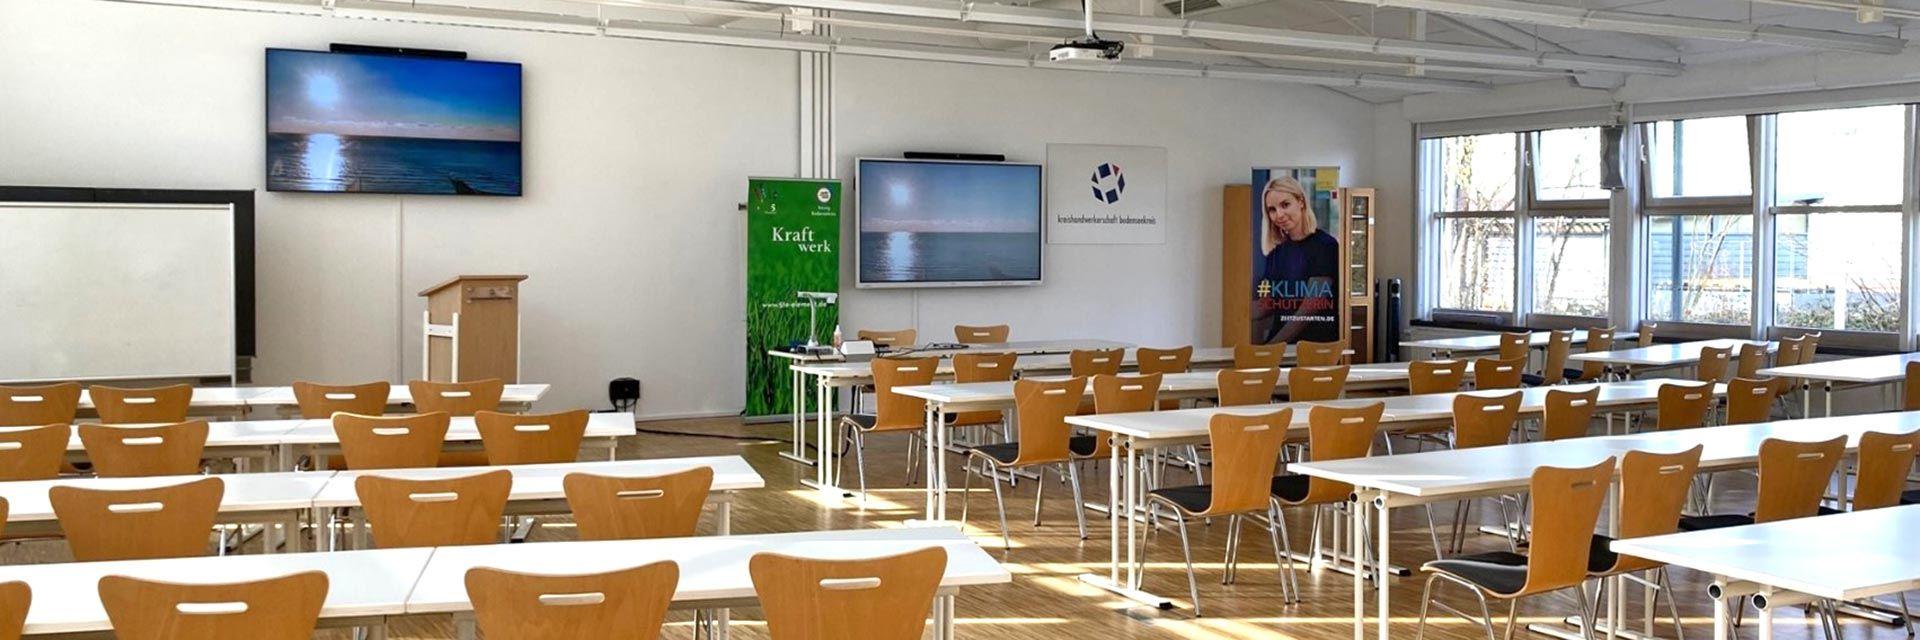 Bild zeigt einen Veranstaltungssaal der Kreishandwerkerschaft Bodenseekreis